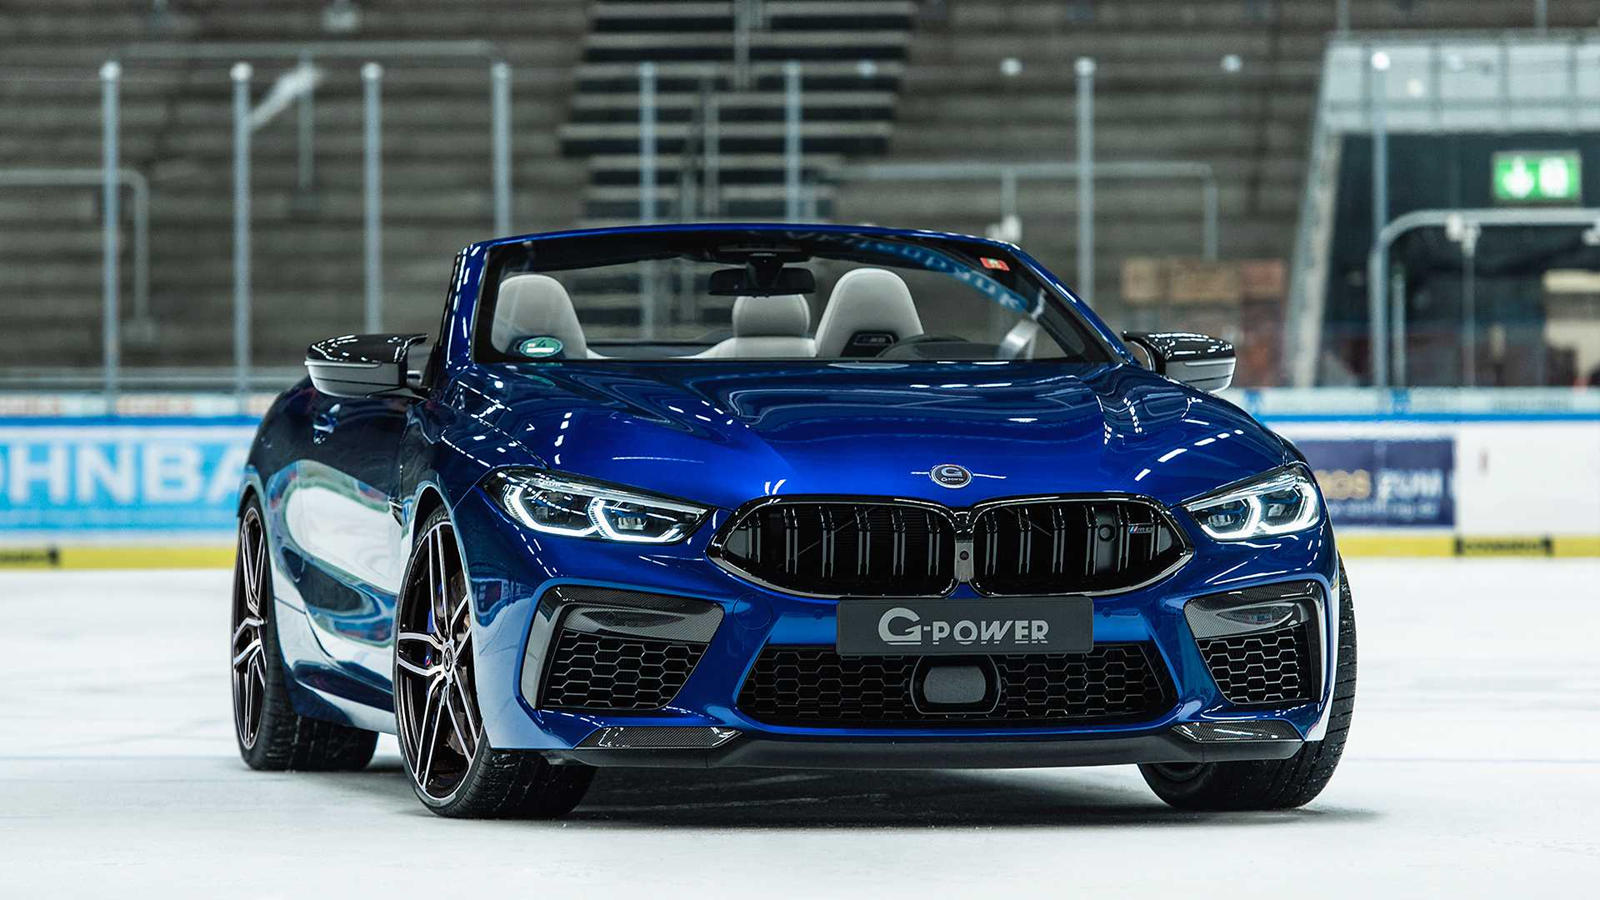 С его 4,4-литровым бензиновым двигателем V8 с двойным турбонаддувом, производящим 617 лошадиных сил и 750 Нм крутящего момента, BMW M8 Competition уже является одним из самых мощных гранд таурер на рынке. Но это, конечно, не помешало тюнерам получать